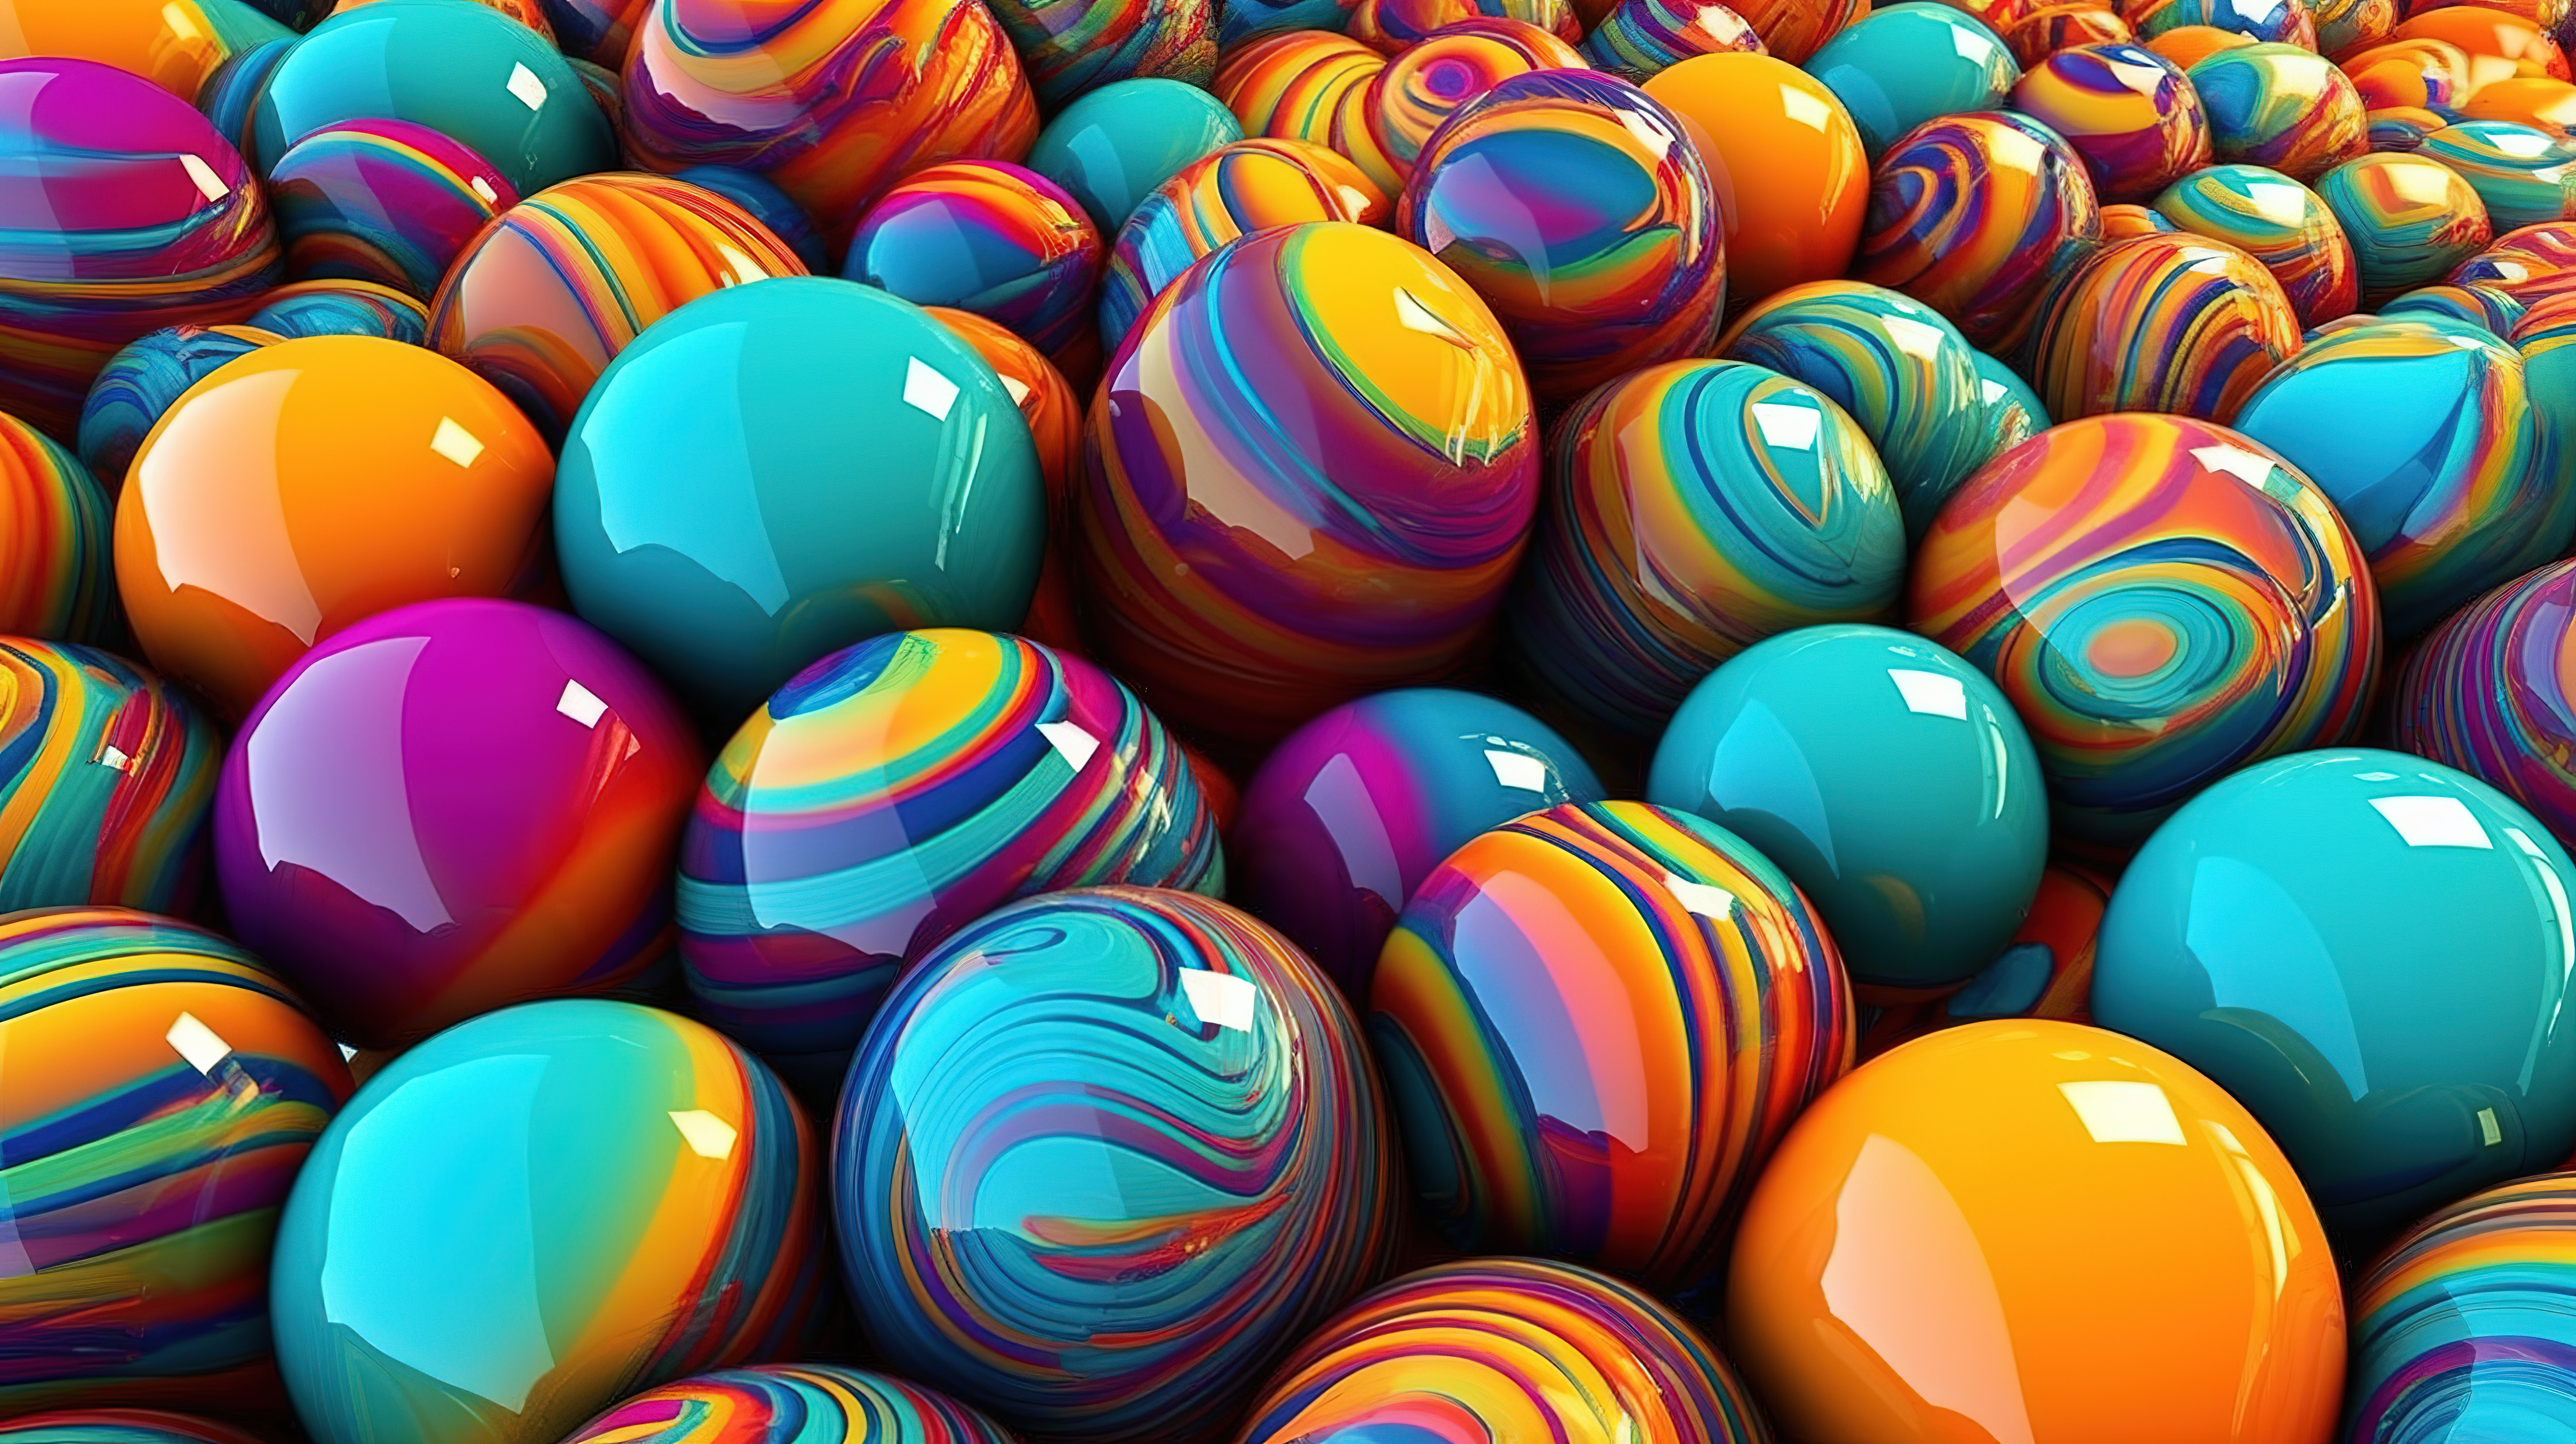 彩色球体和圆形形状是 3D 渲染中令人惊叹的抽象插图图片